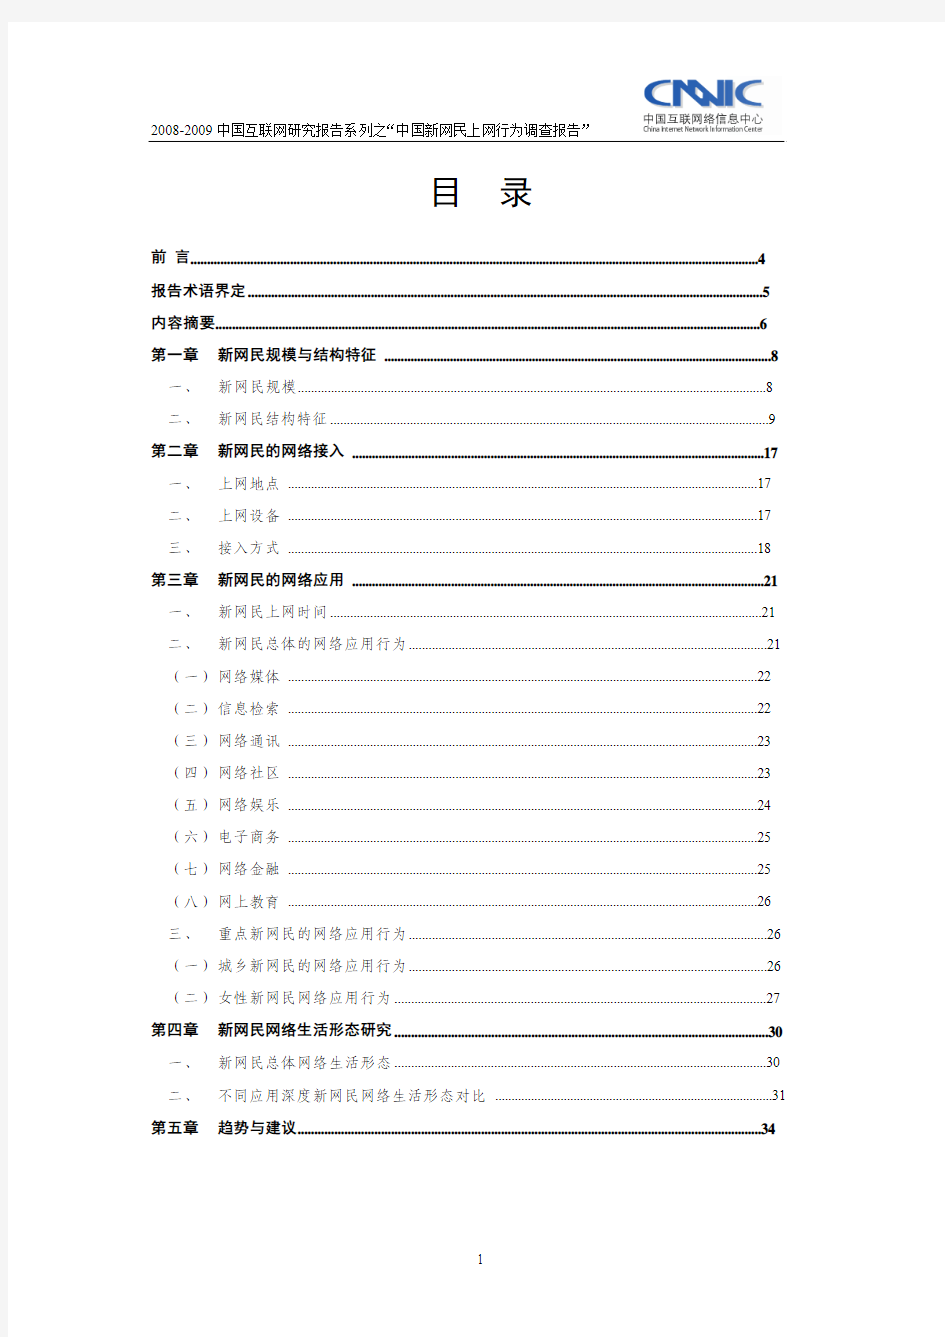 2008-2009中国互联网研究报告系列之“中国新网民上网行为调查报告”